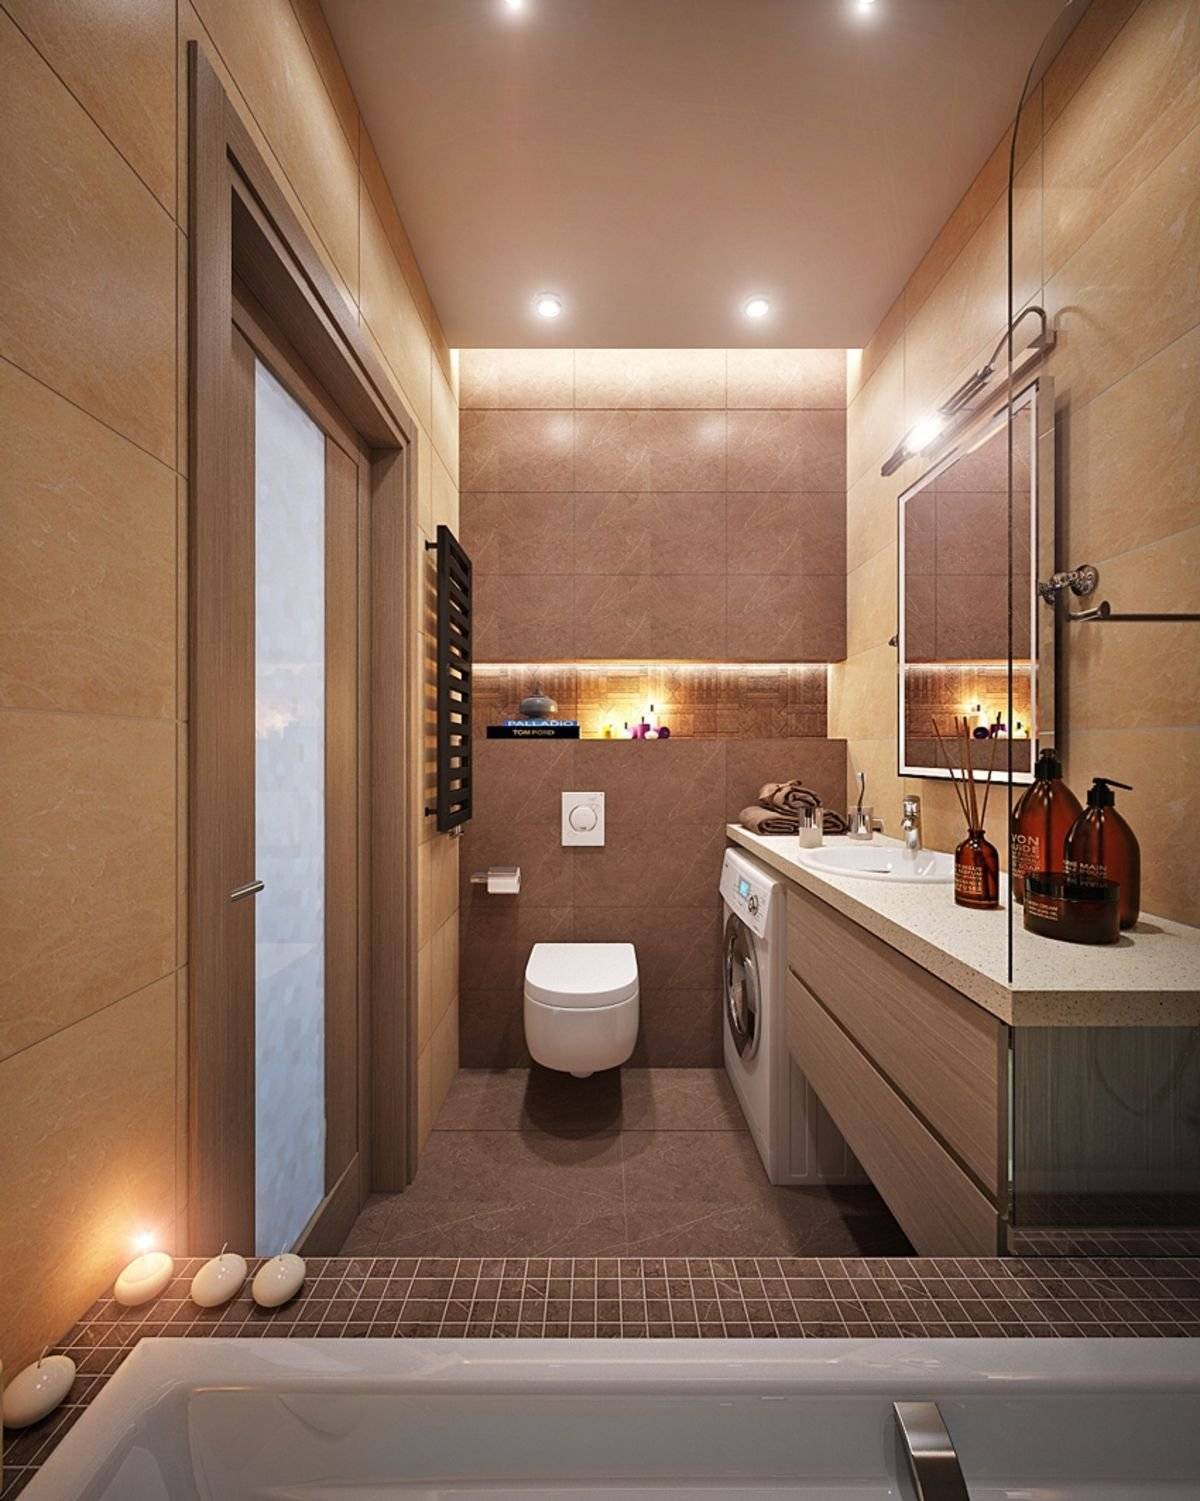 Ванные комнаты 5-6 кв.м - красивые фото идеи оформления интерьера